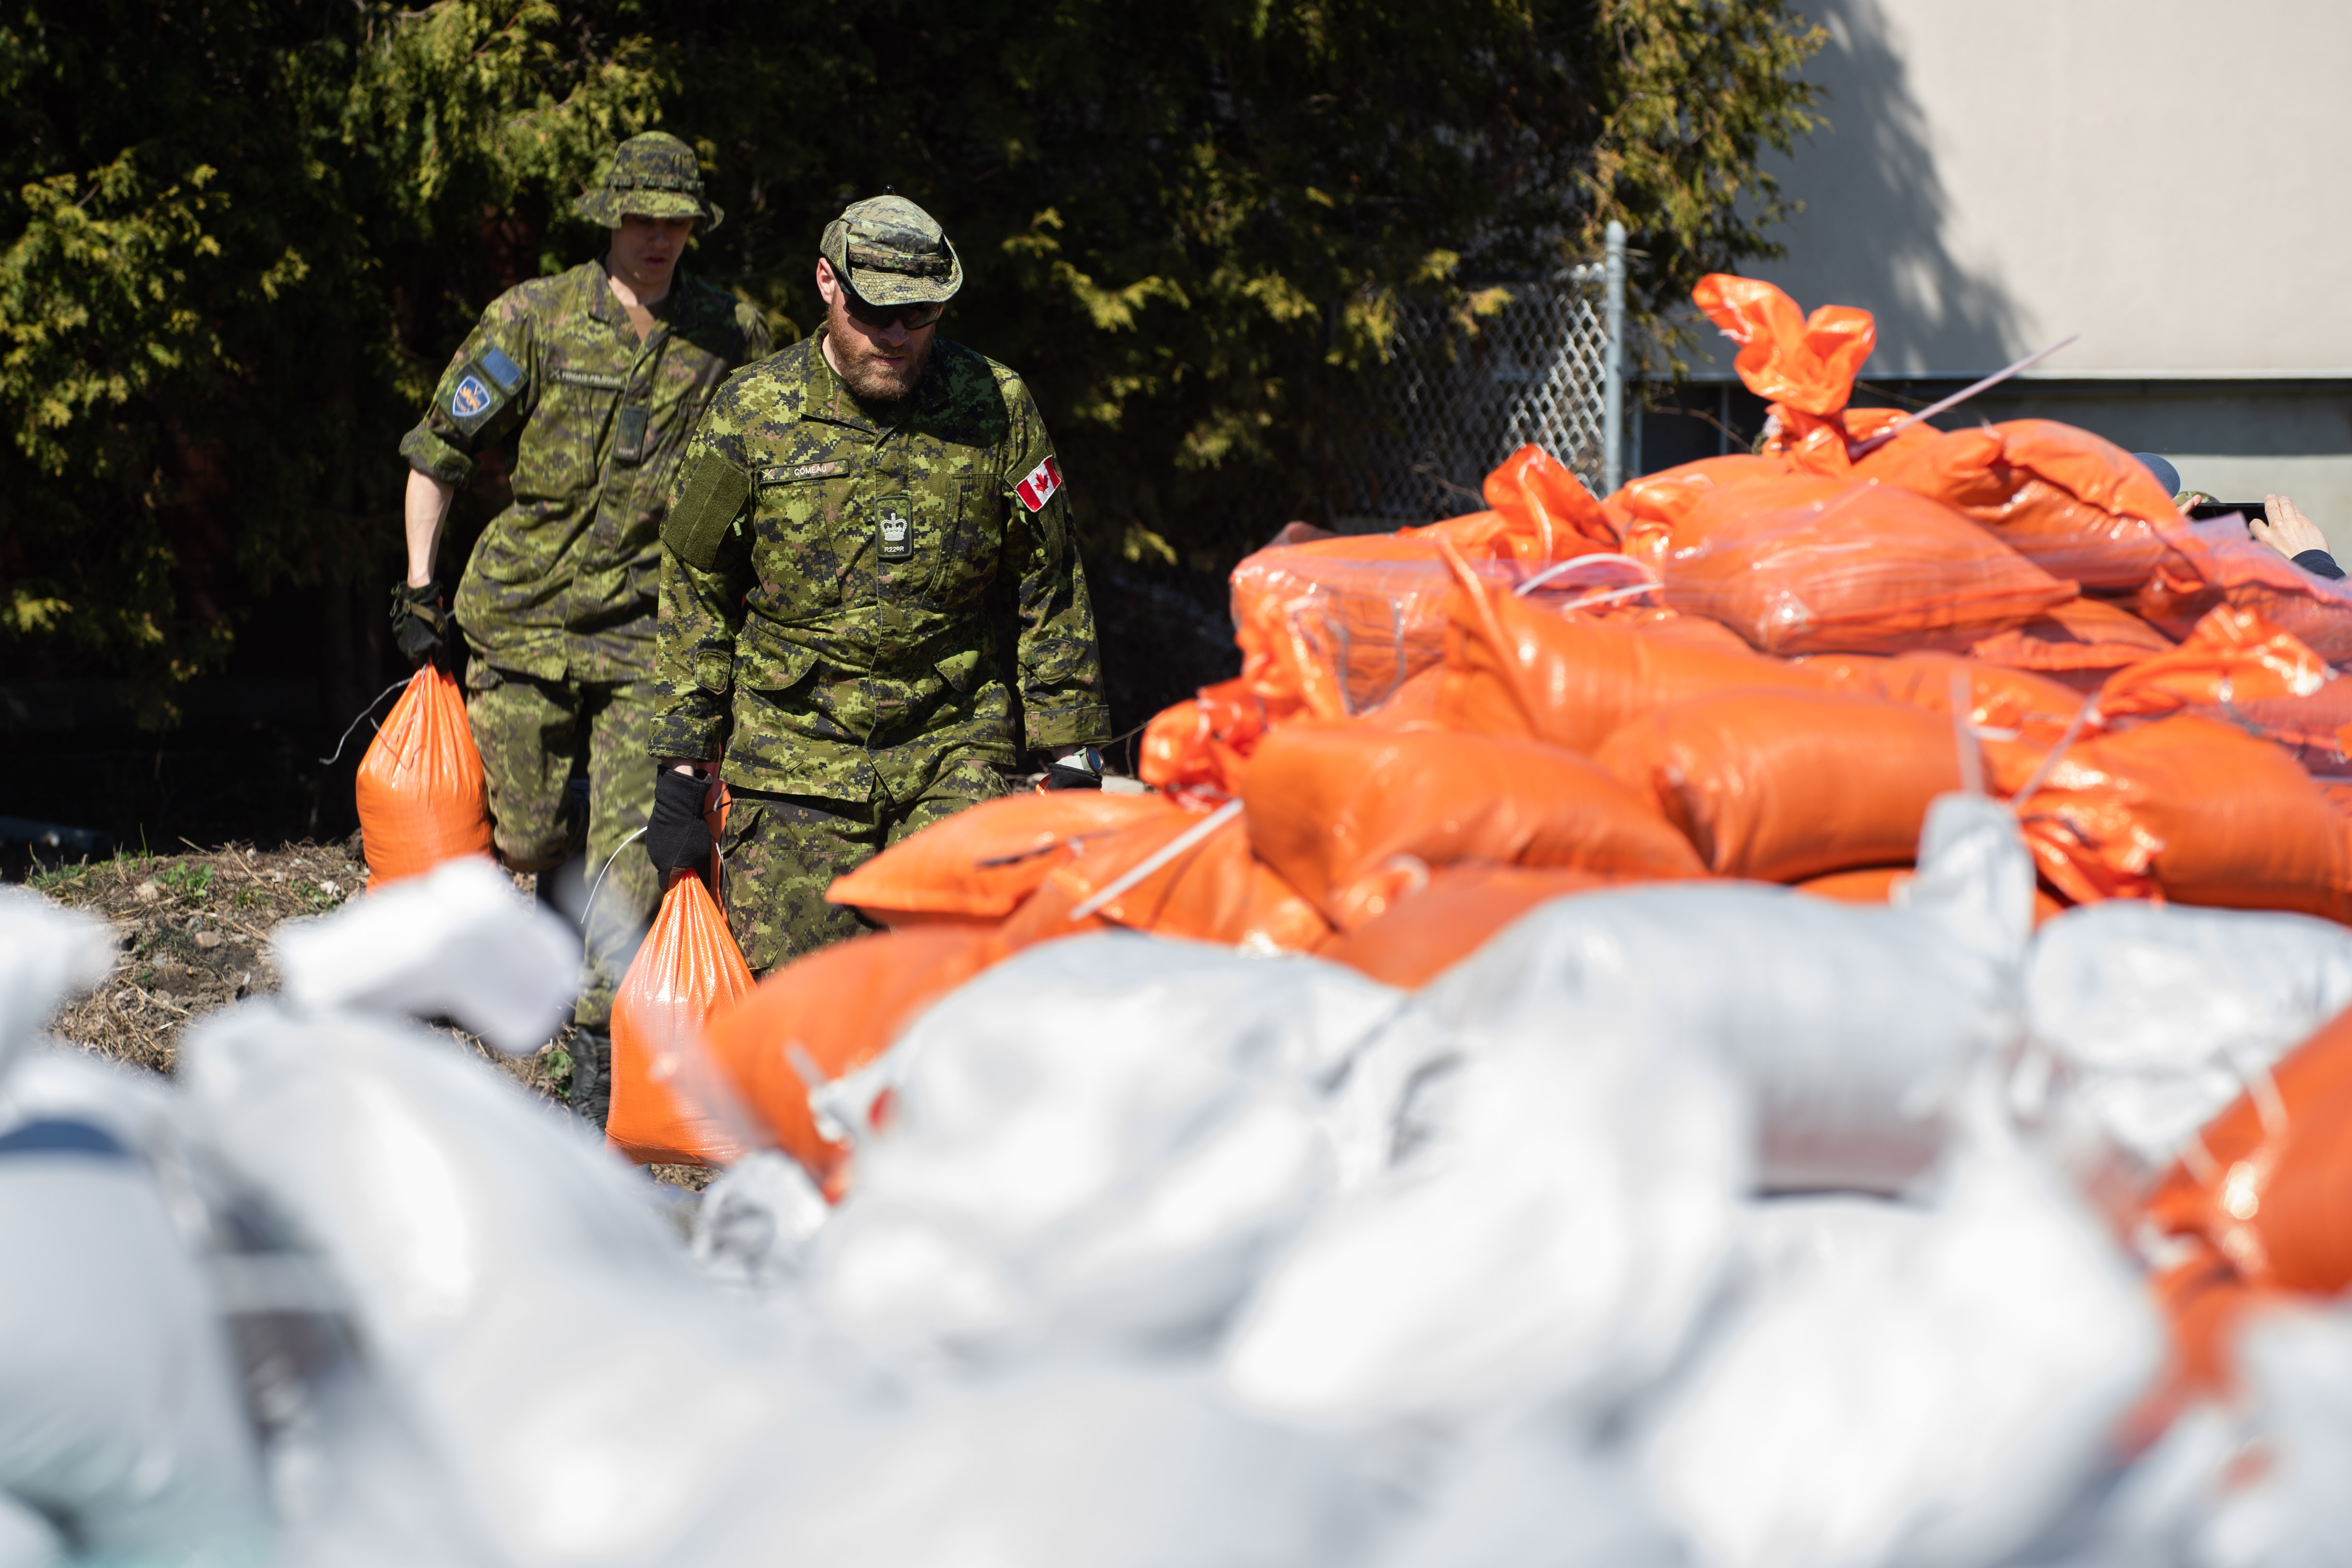 Des membres du 2e Bataillon, Royal 22e Régiment, participent aux opérations de secours dans les zones inondées de Gatineau, au Québec, au cours de l’opération LENTUS, le 22 avril 2019. Photo : Sdt Hugo Montpetit, Caméra de combat des Forces canadiennes